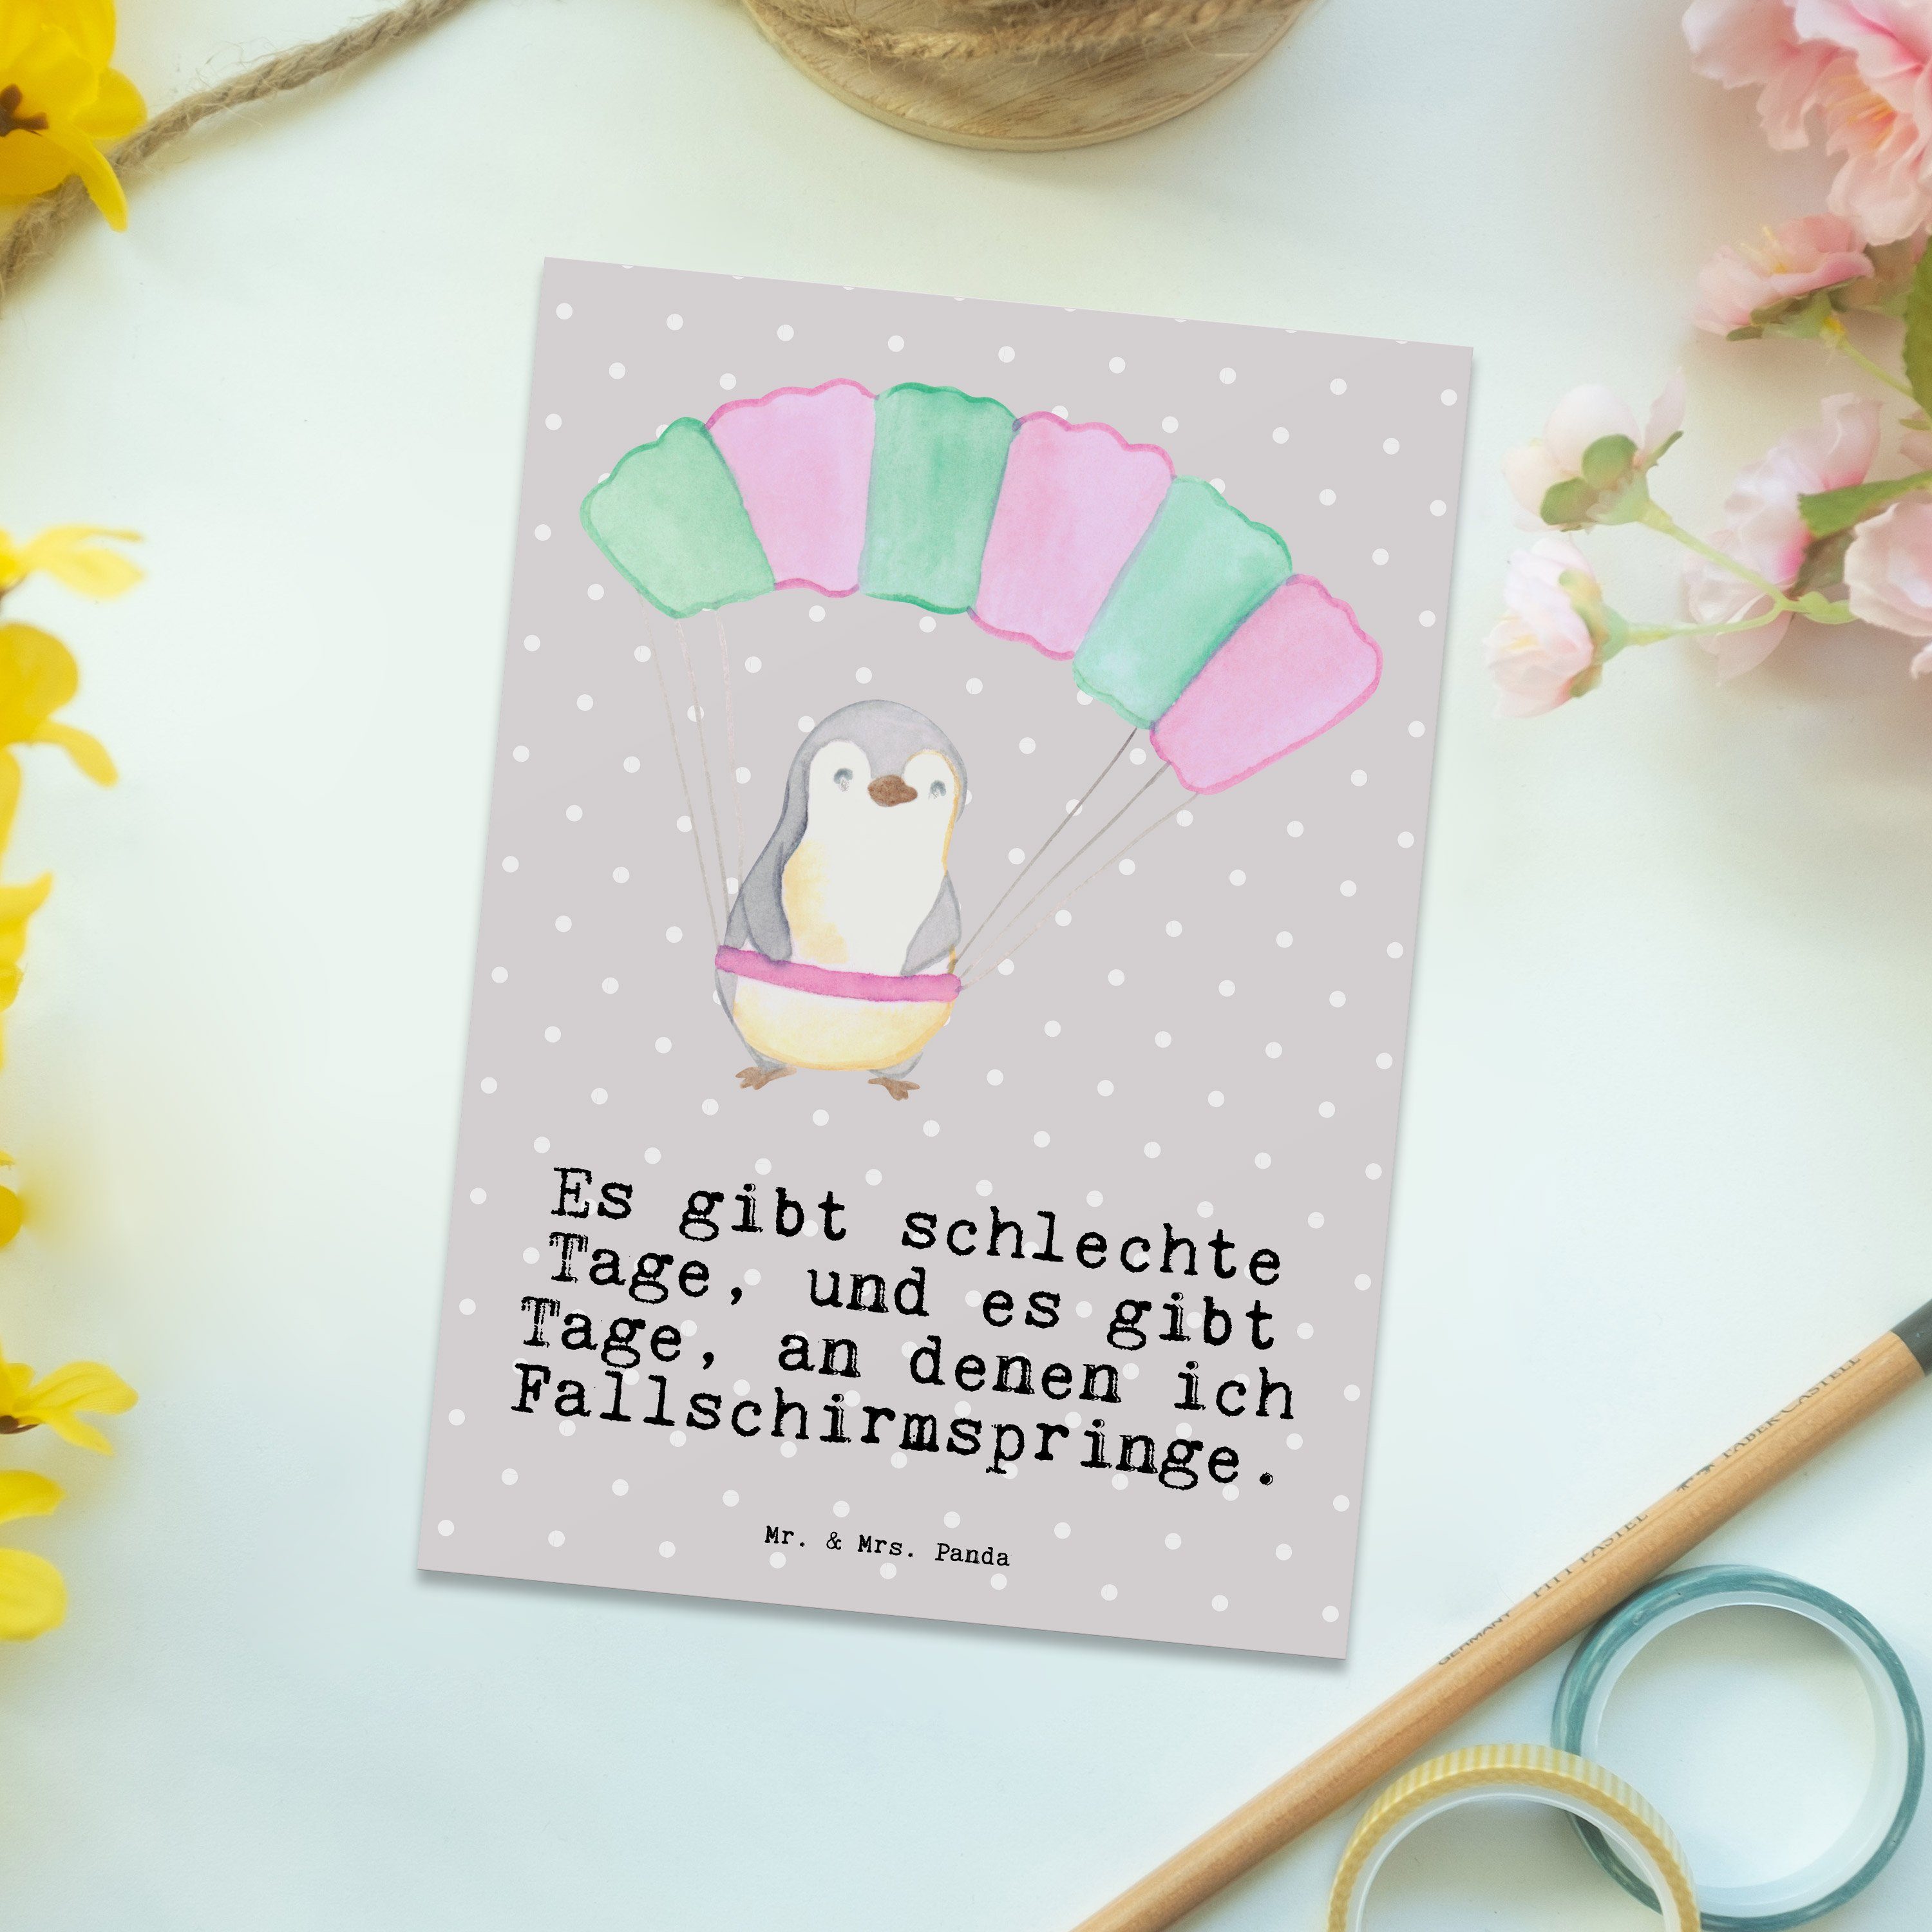 Mr. & Mrs. Panda Pastell Fallschirm Geschenk, Tage springen Geschenkk Pinguin - - Postkarte Grau